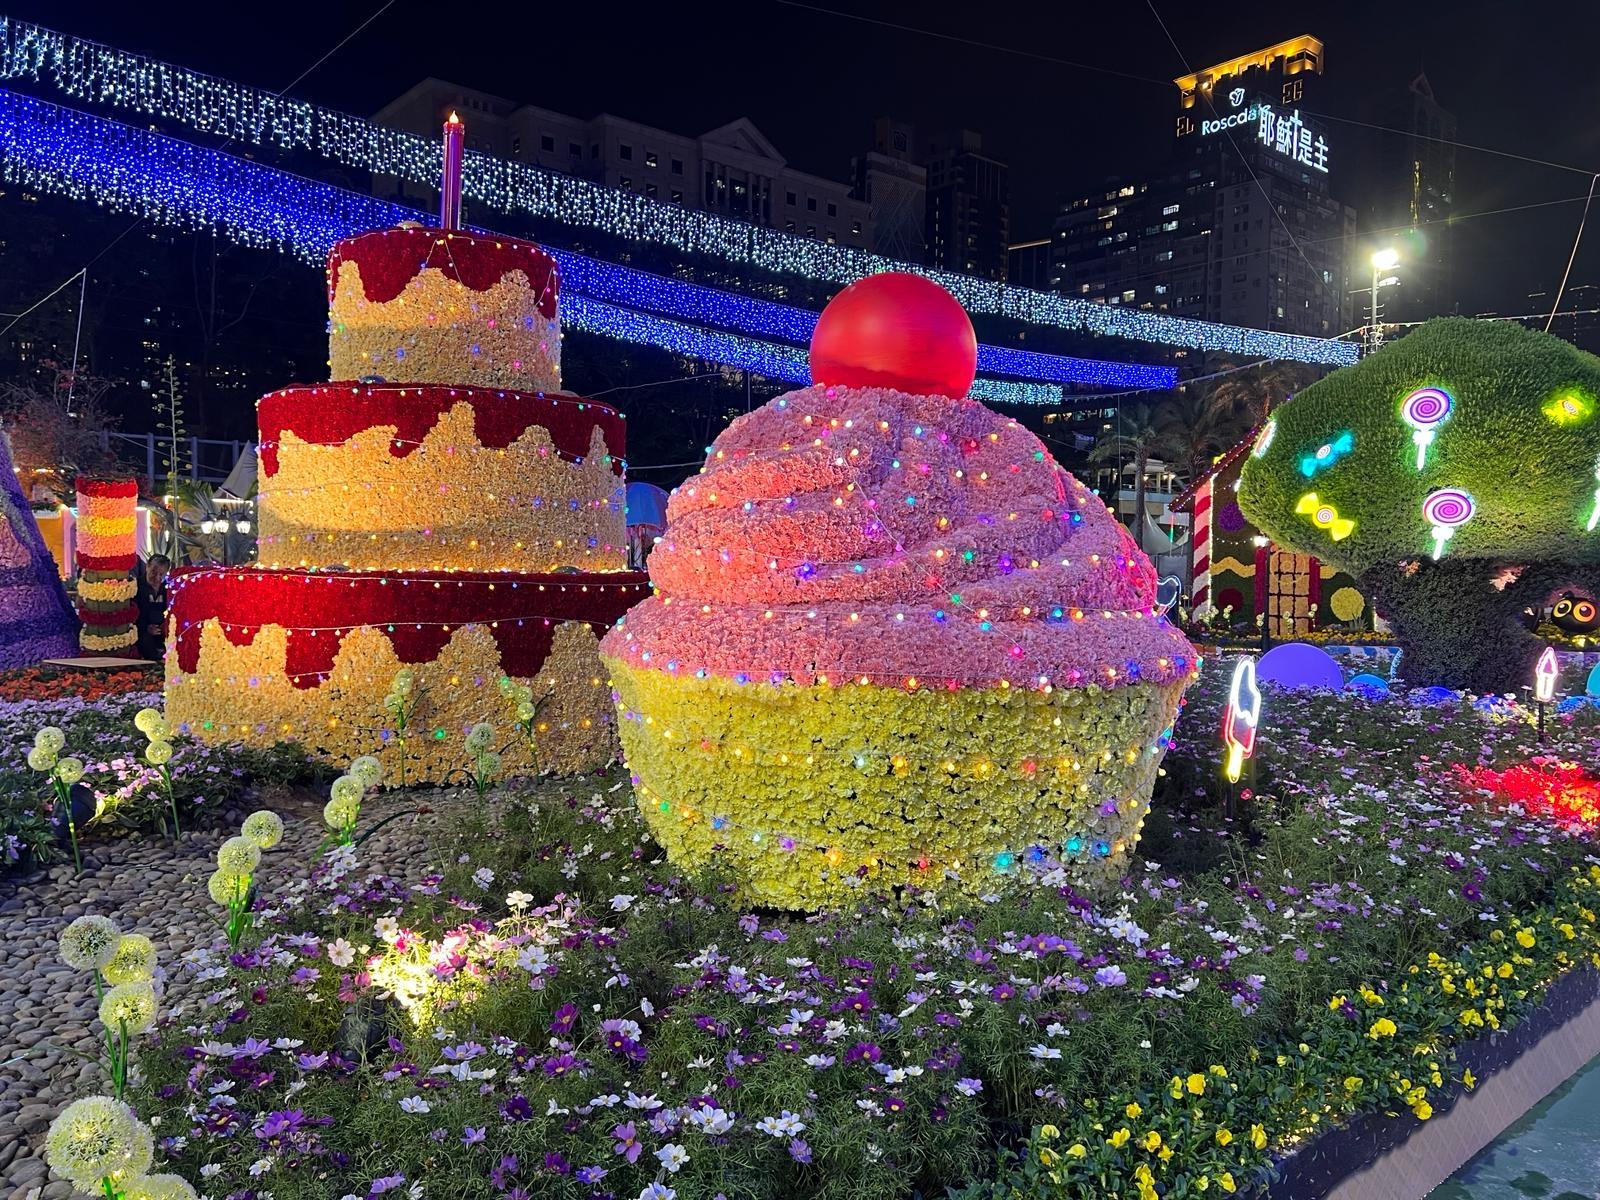 二○二四年香港花卉展覽（花展）明日（三月十五日）至三月二十四日在維多利亞公園舉行。今年花展的主題花是香彩雀，以「雀躍全城」為主題。晚上各個大型園林造景均加入燈光效果，讓遊人享受到不同的視覺體驗。圖示以《糖果屋》為主題的園林造景。